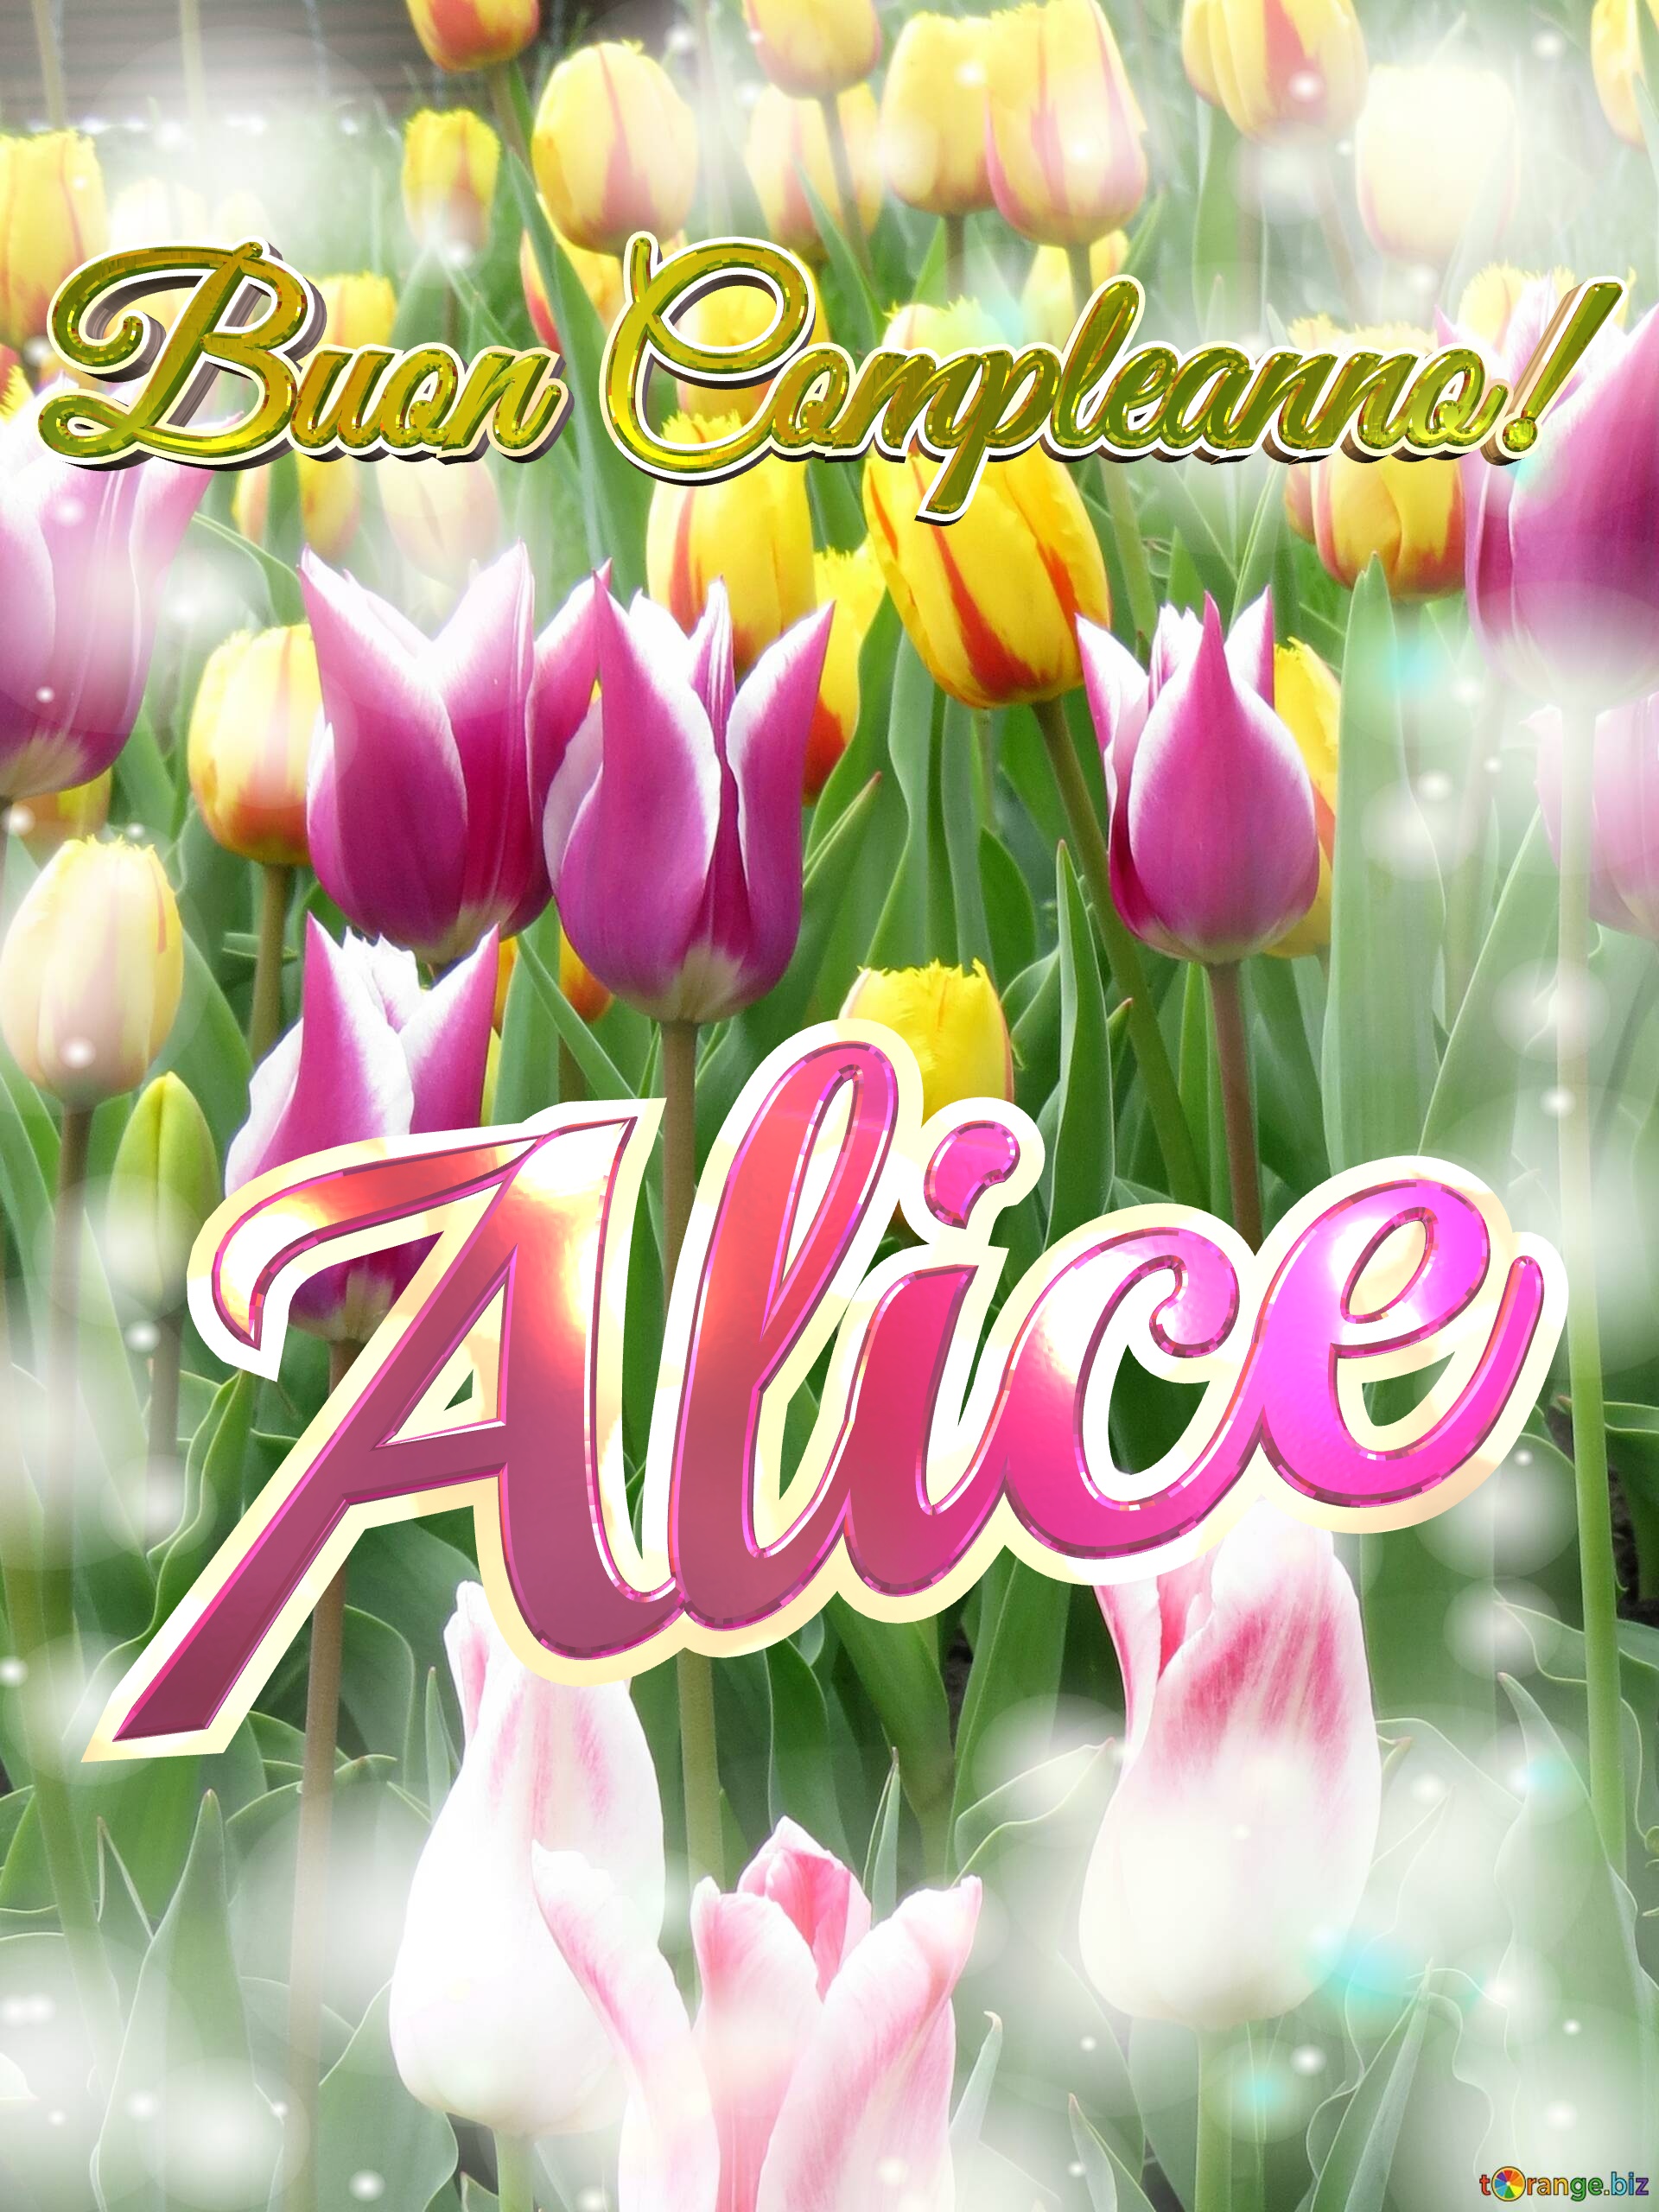 Buon Compleanno! Alice  Questi tulipani ti portano la bellezza della primavera e la gioia della vita, goditi ogni momento. №0